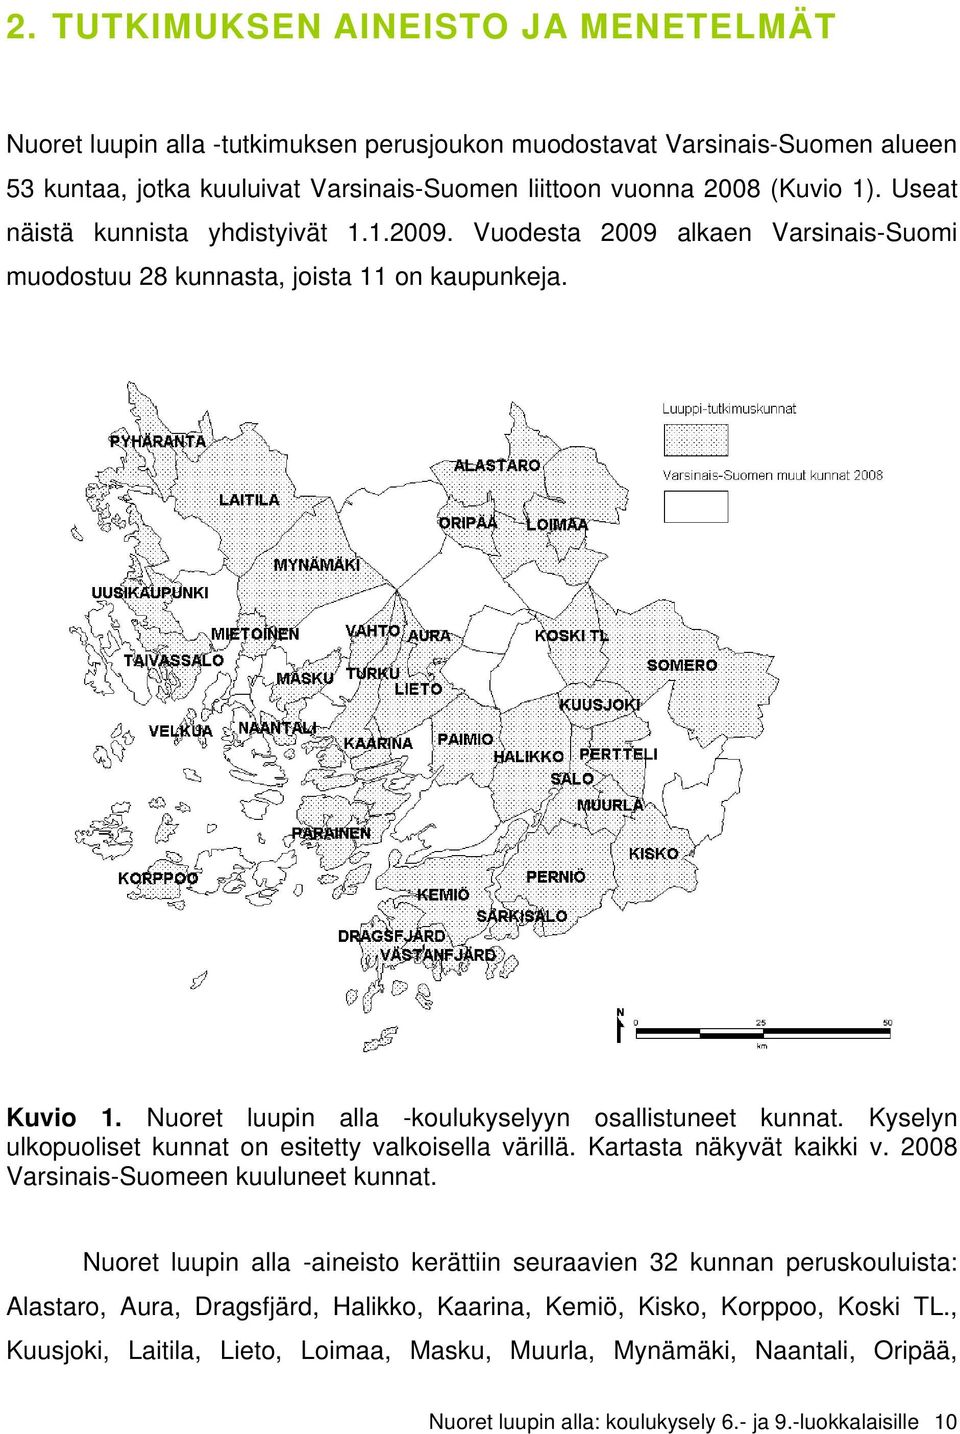 Kyselyn ulkopuoliset kunnat on esitetty valkoisella värillä. Kartasta näkyvät kaikki v. 2008 Varsinais-Suomeen kuuluneet kunnat.